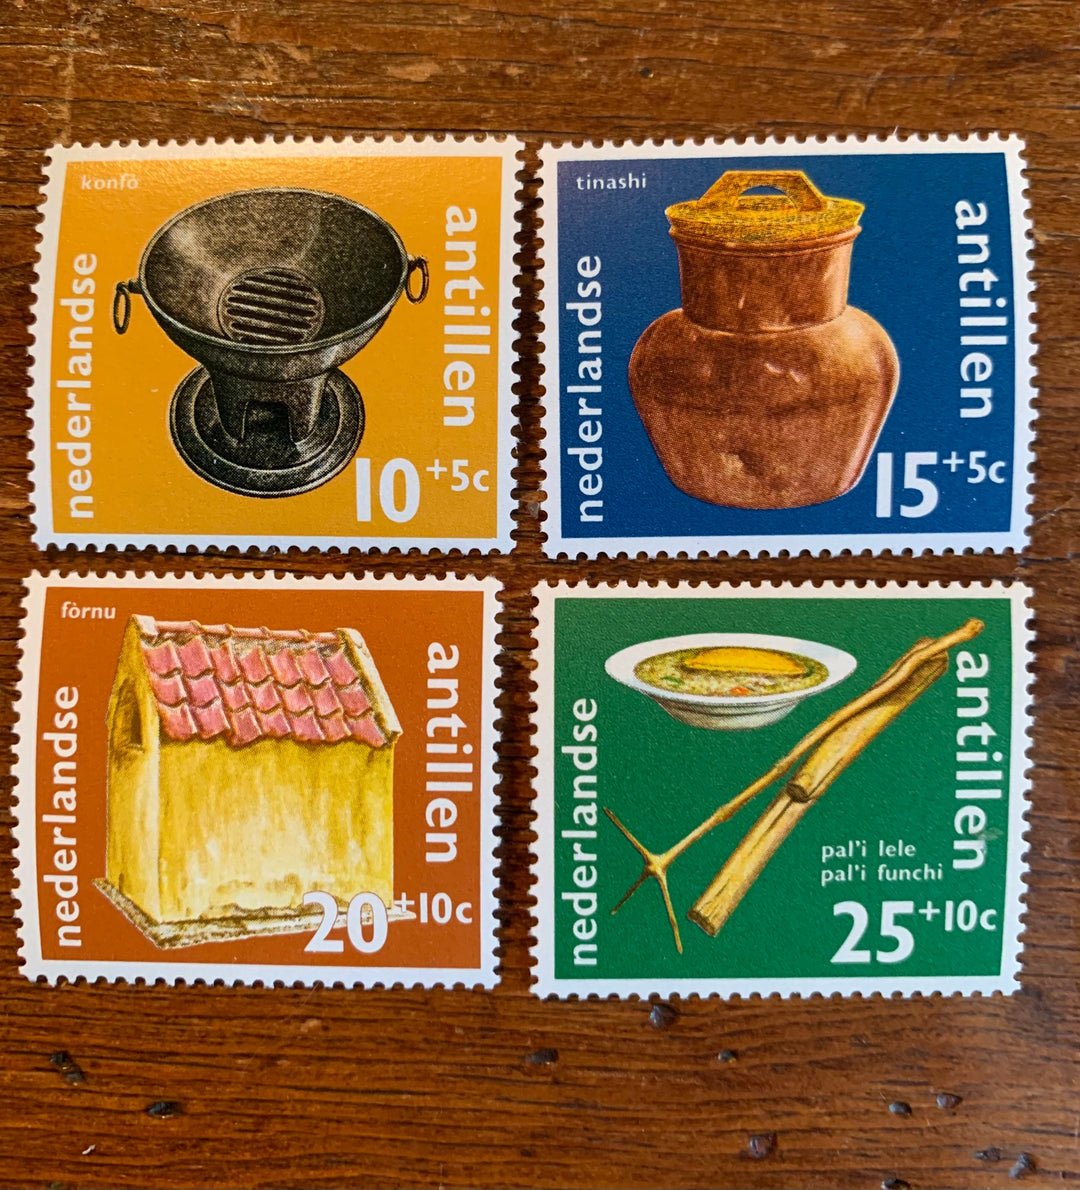 Netherlands Antilles- Original Vintage Postage -1971 Kitchen Utensils